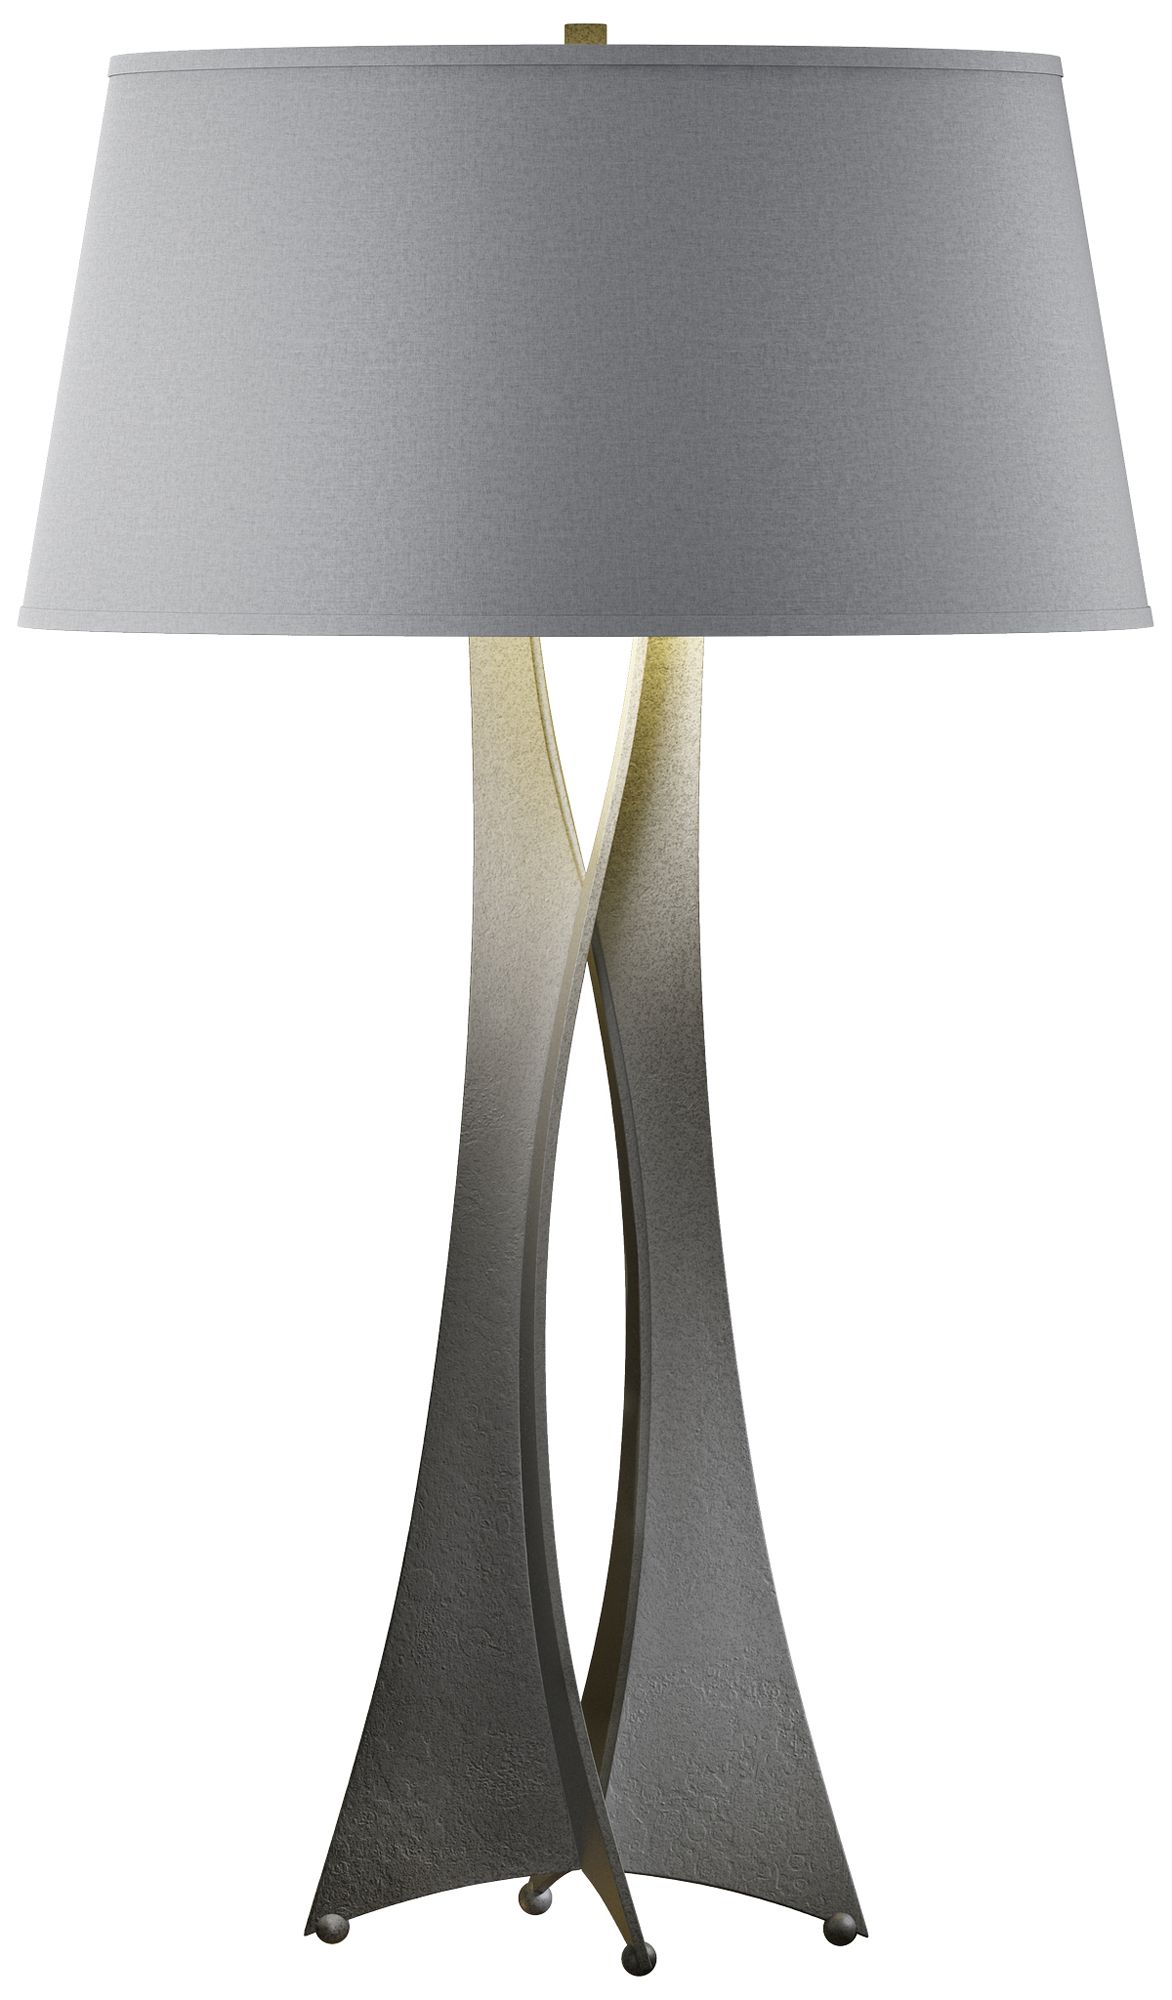 Moreau 33.4" High Tall Natural Iron Table Lamp With Medium Grey Shade